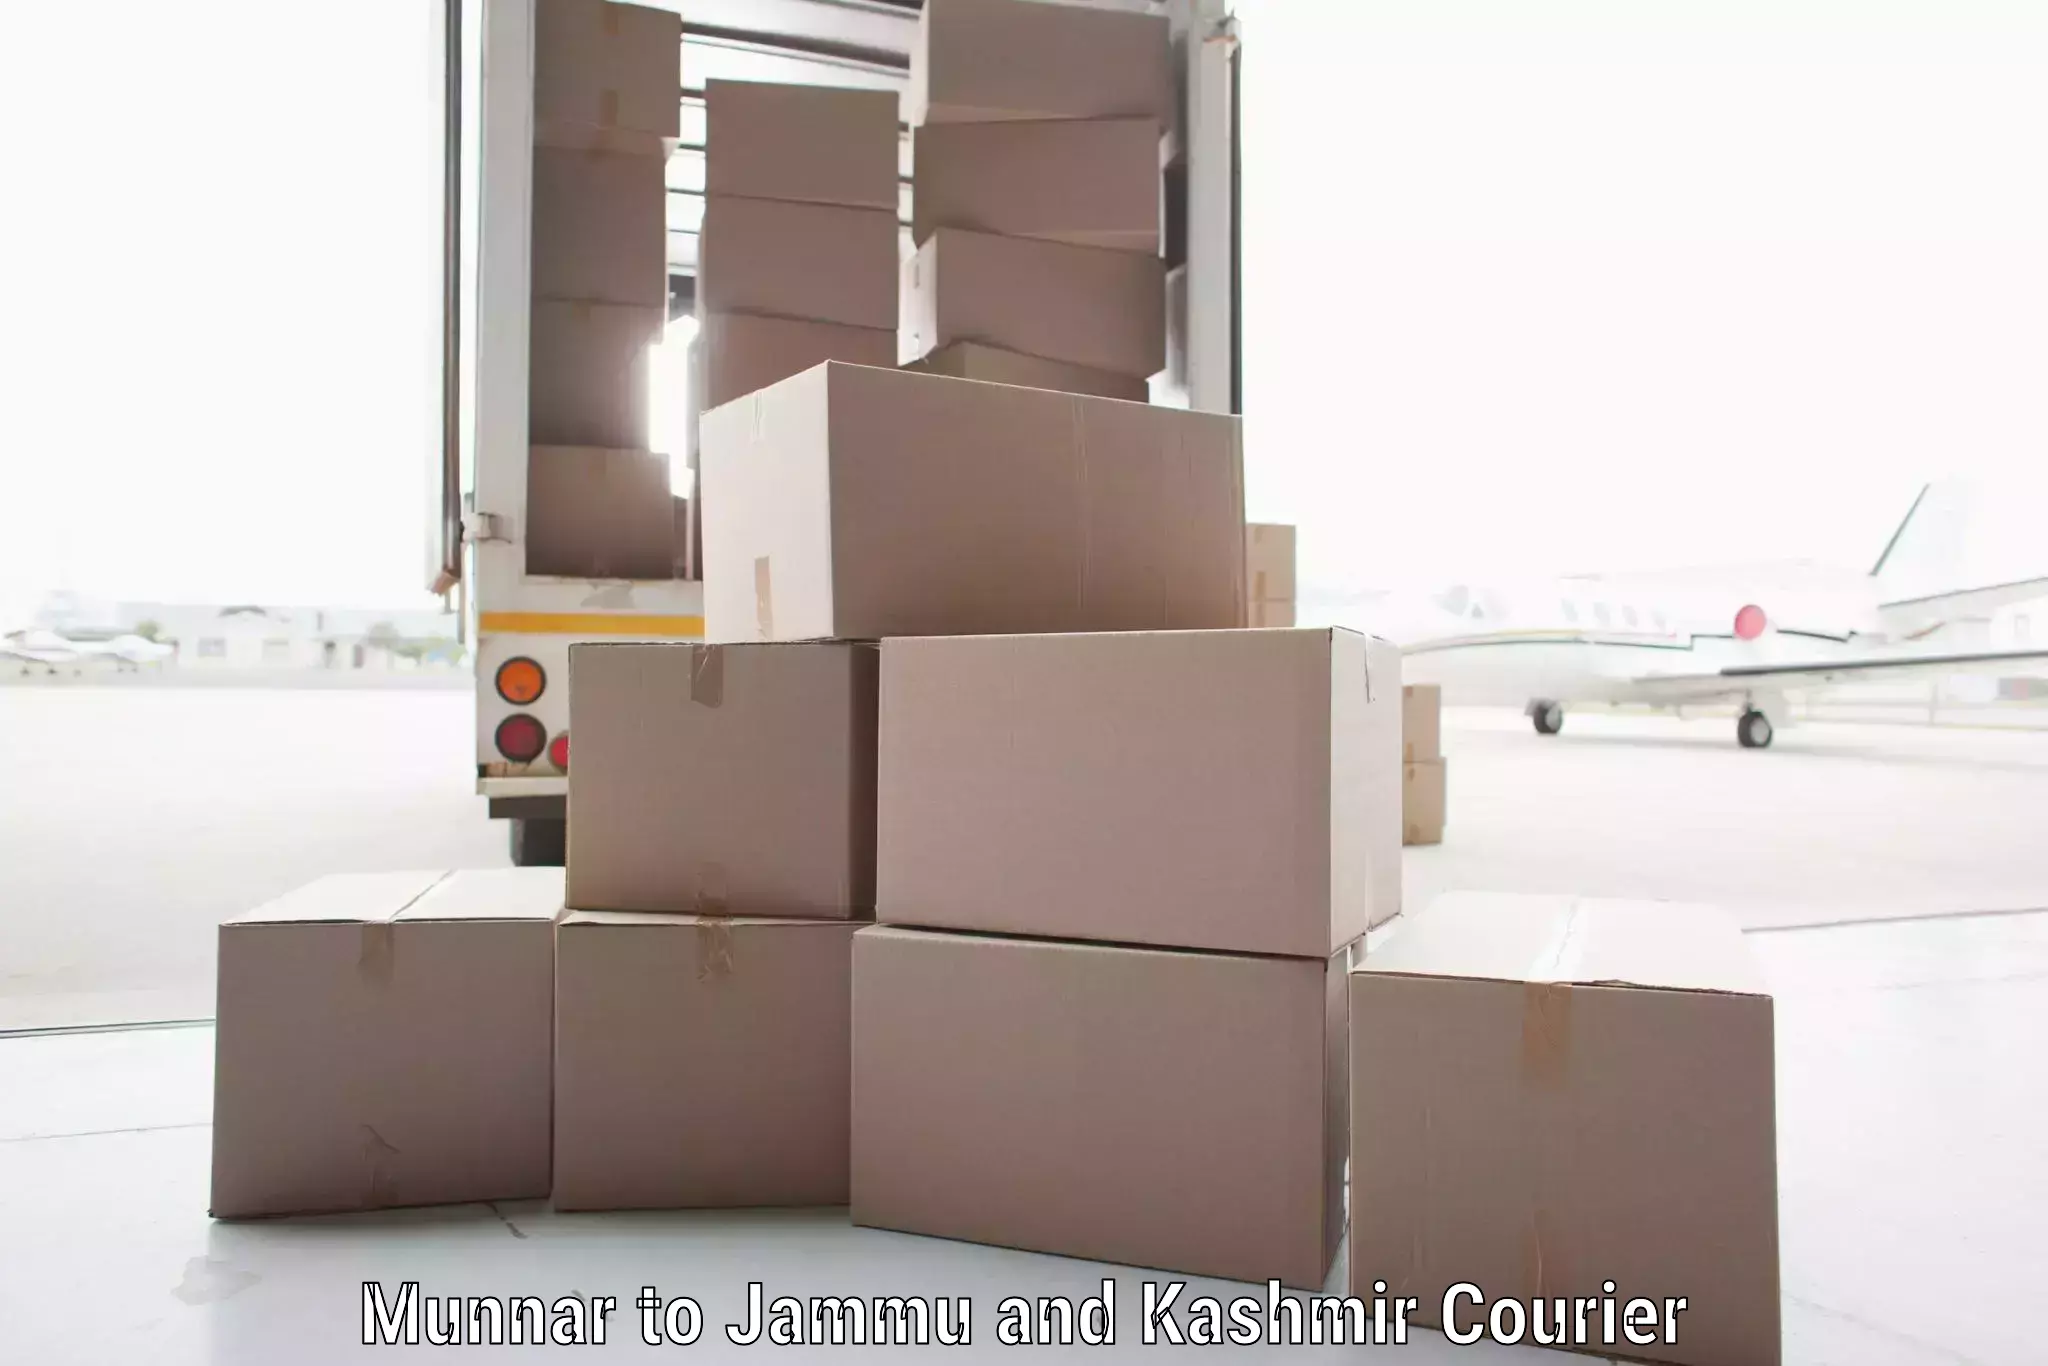 High-capacity shipping options Munnar to Sopore